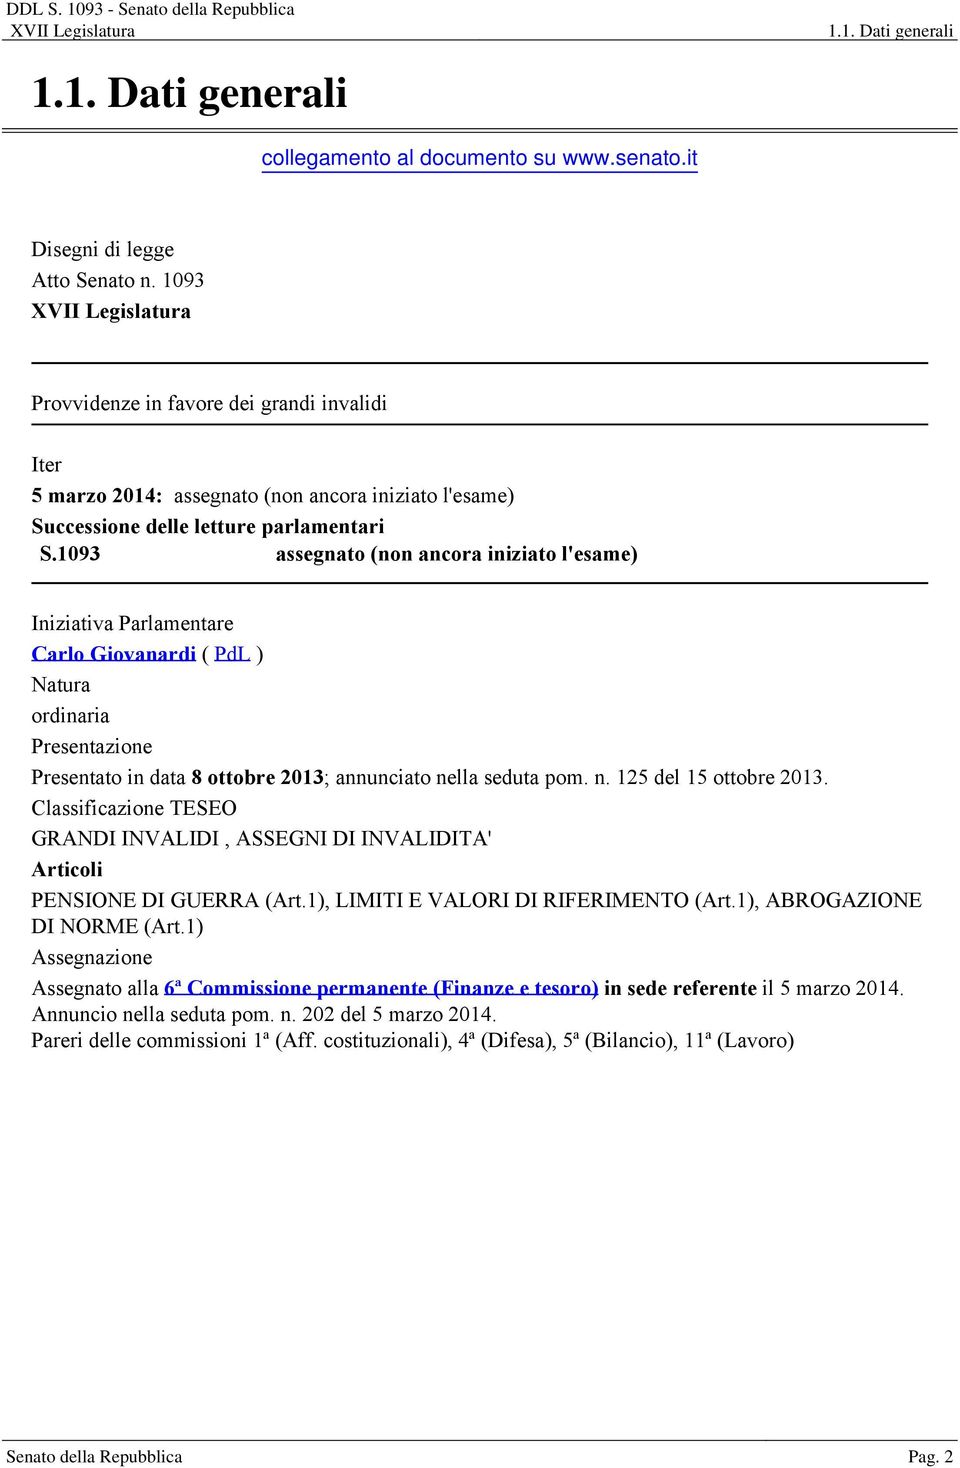 1093 assegnato (non ancora iniziato l'esame) Iniziativa Parlamentare Carlo Giovanardi ( PdL ) Natura ordinaria Presentazione Presentato in data 8 ottobre 2013; annunciato nella seduta pom. n. 125 del 15 ottobre 2013.